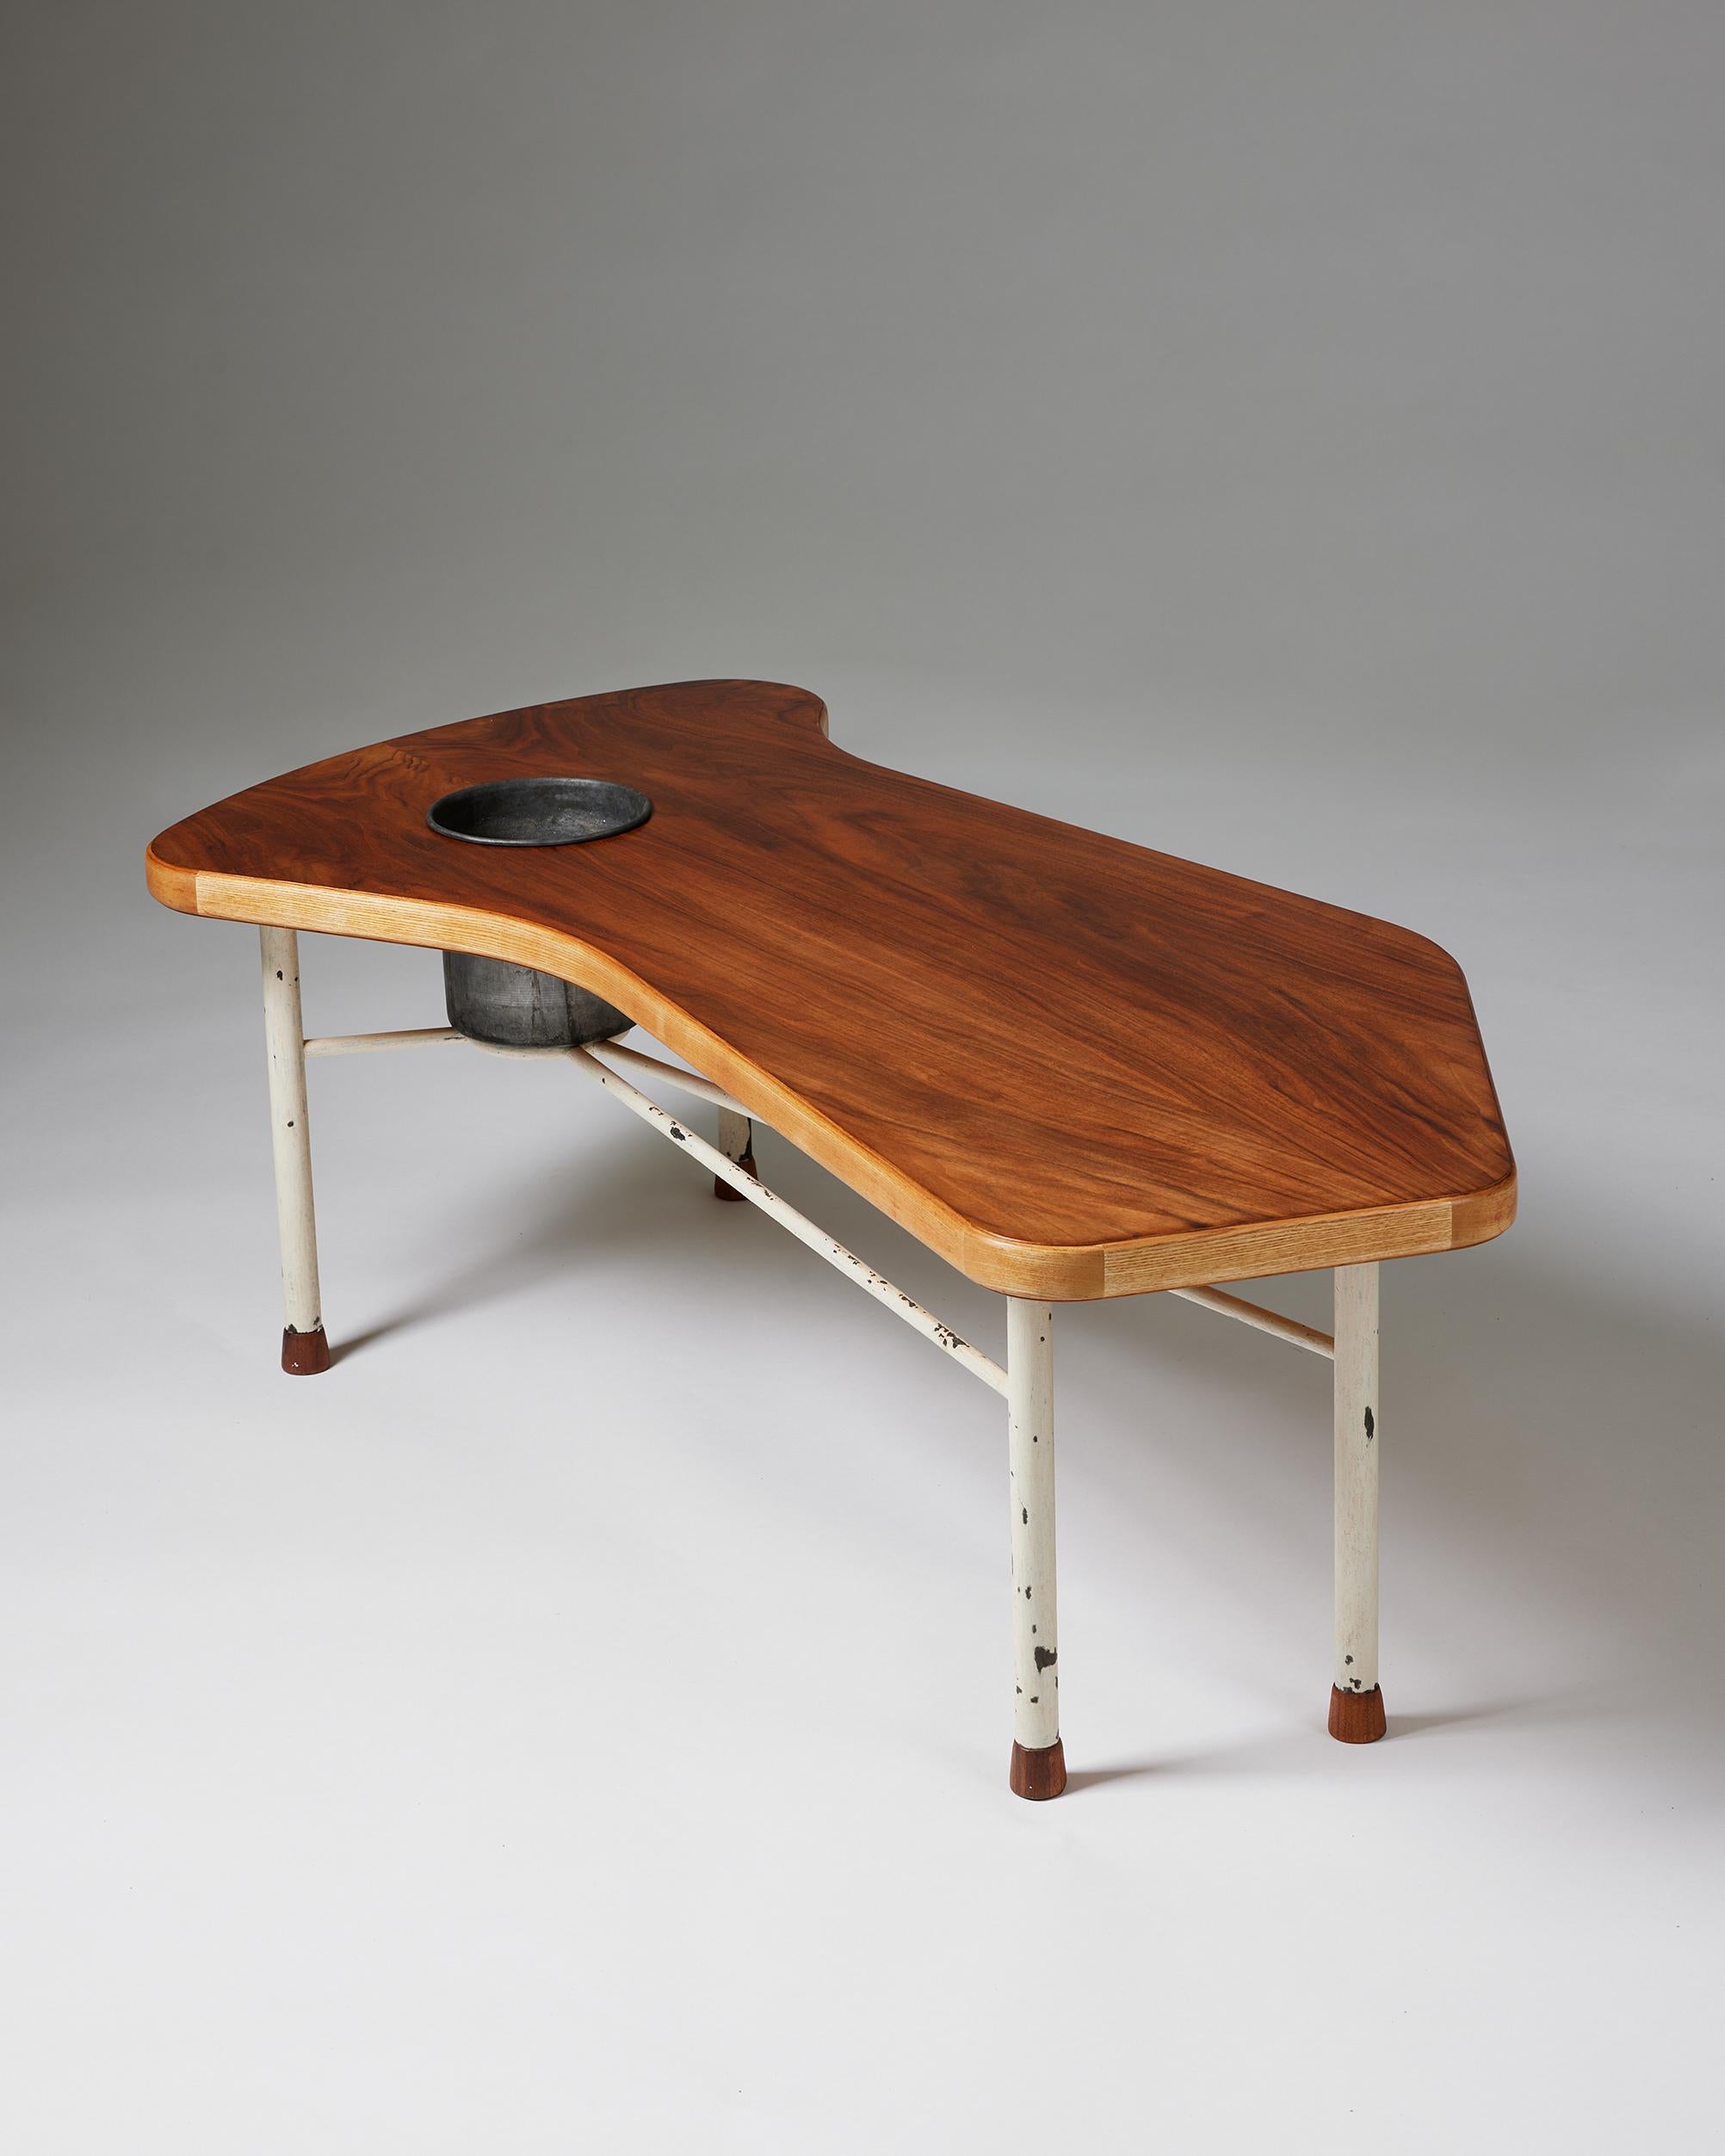 Danish Rare Coffee Table Designed by Finn Juhl for Niels Vodder, Denmark, 1941 For Sale